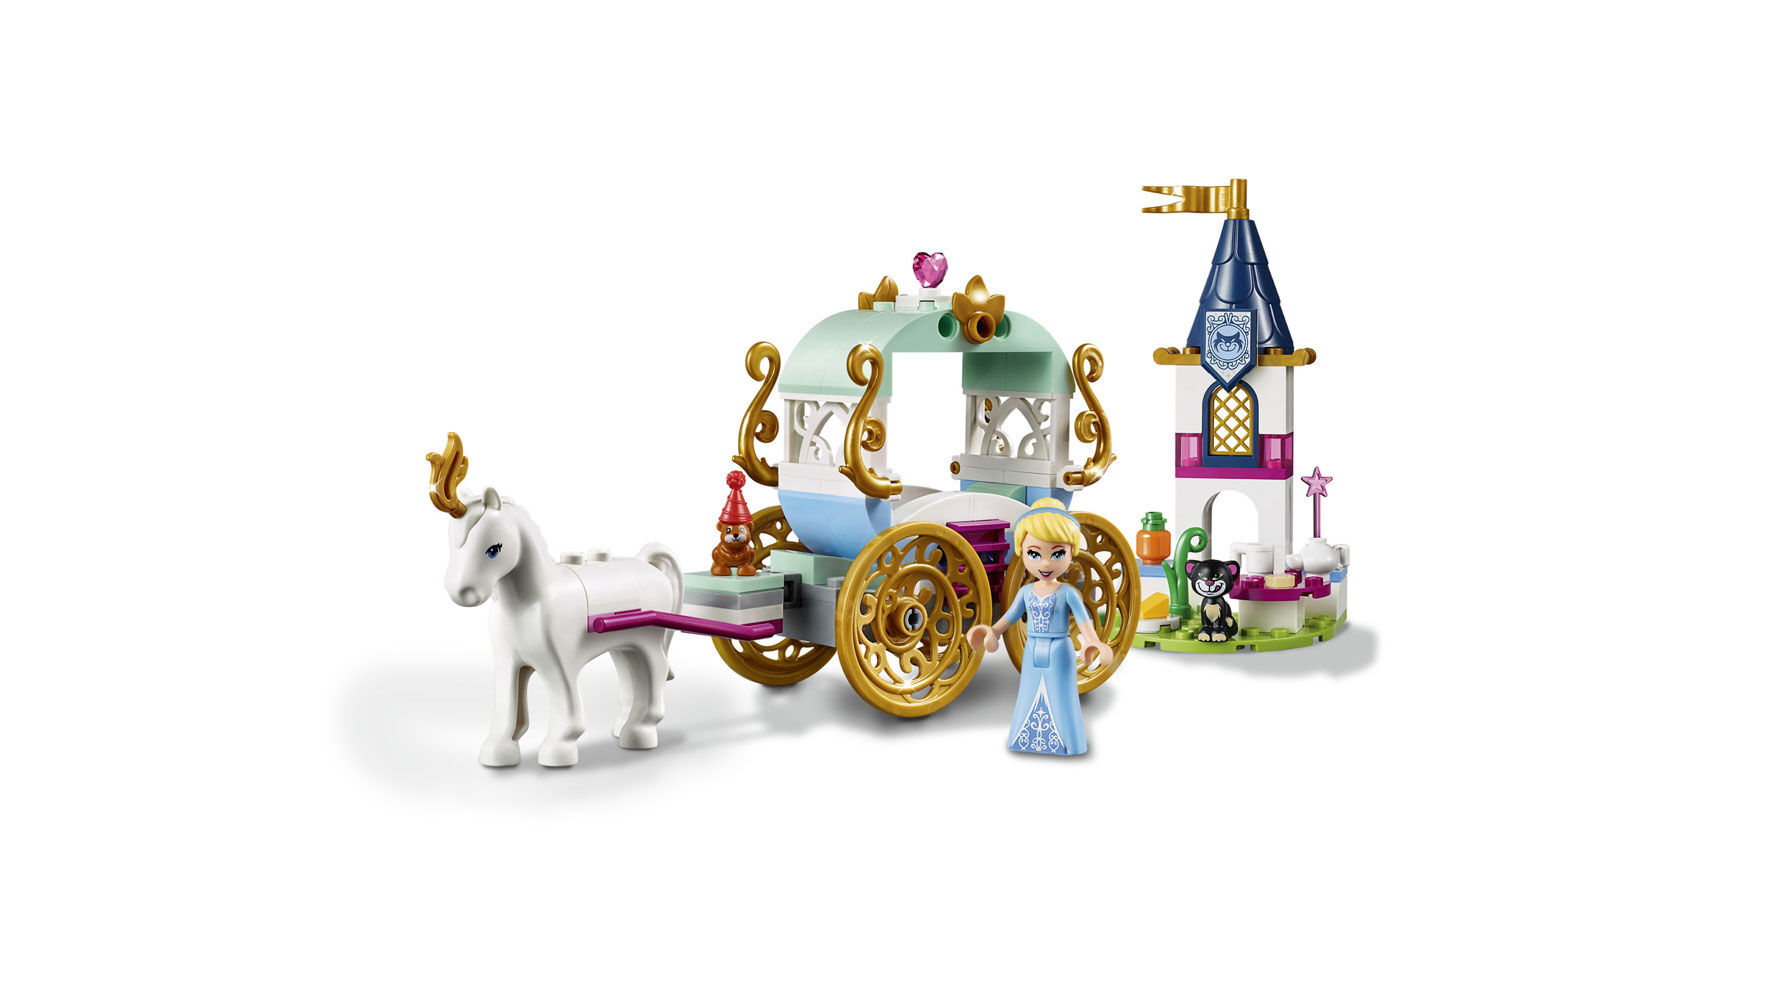 cinderella's carriage ride lego